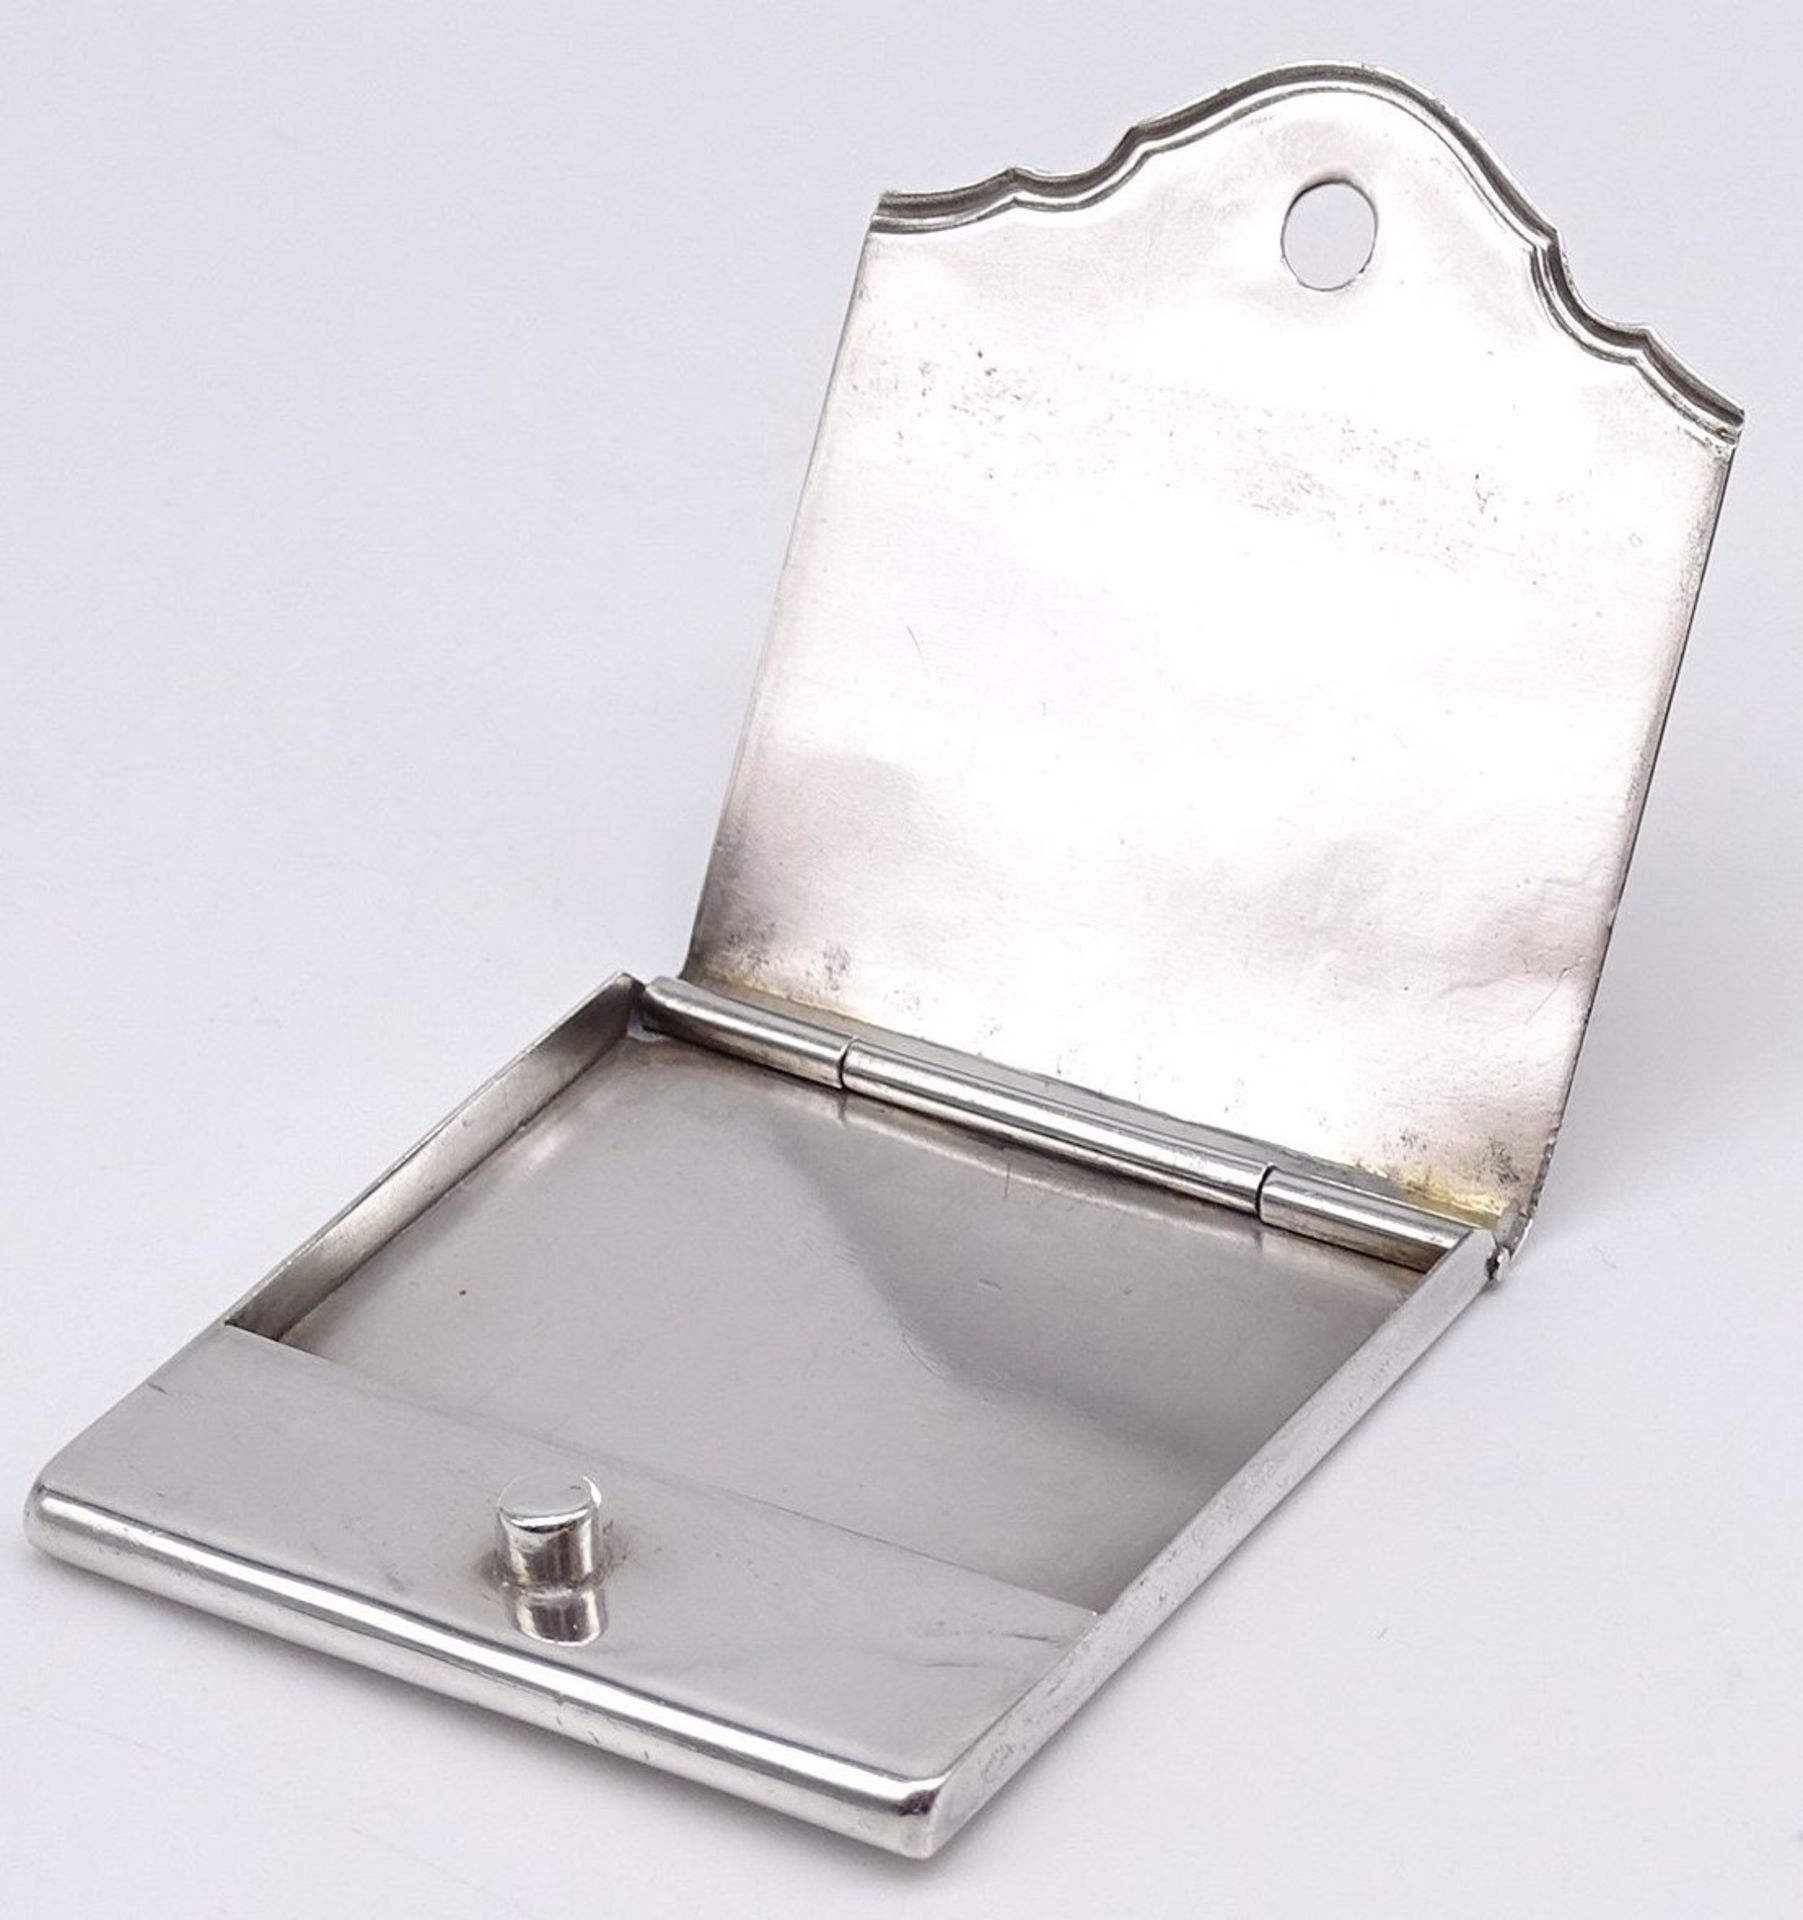 Silber-800- Streichholz-Etui mit Ziermonogramm, 6x5 cm, 39 gr. - Image 3 of 3